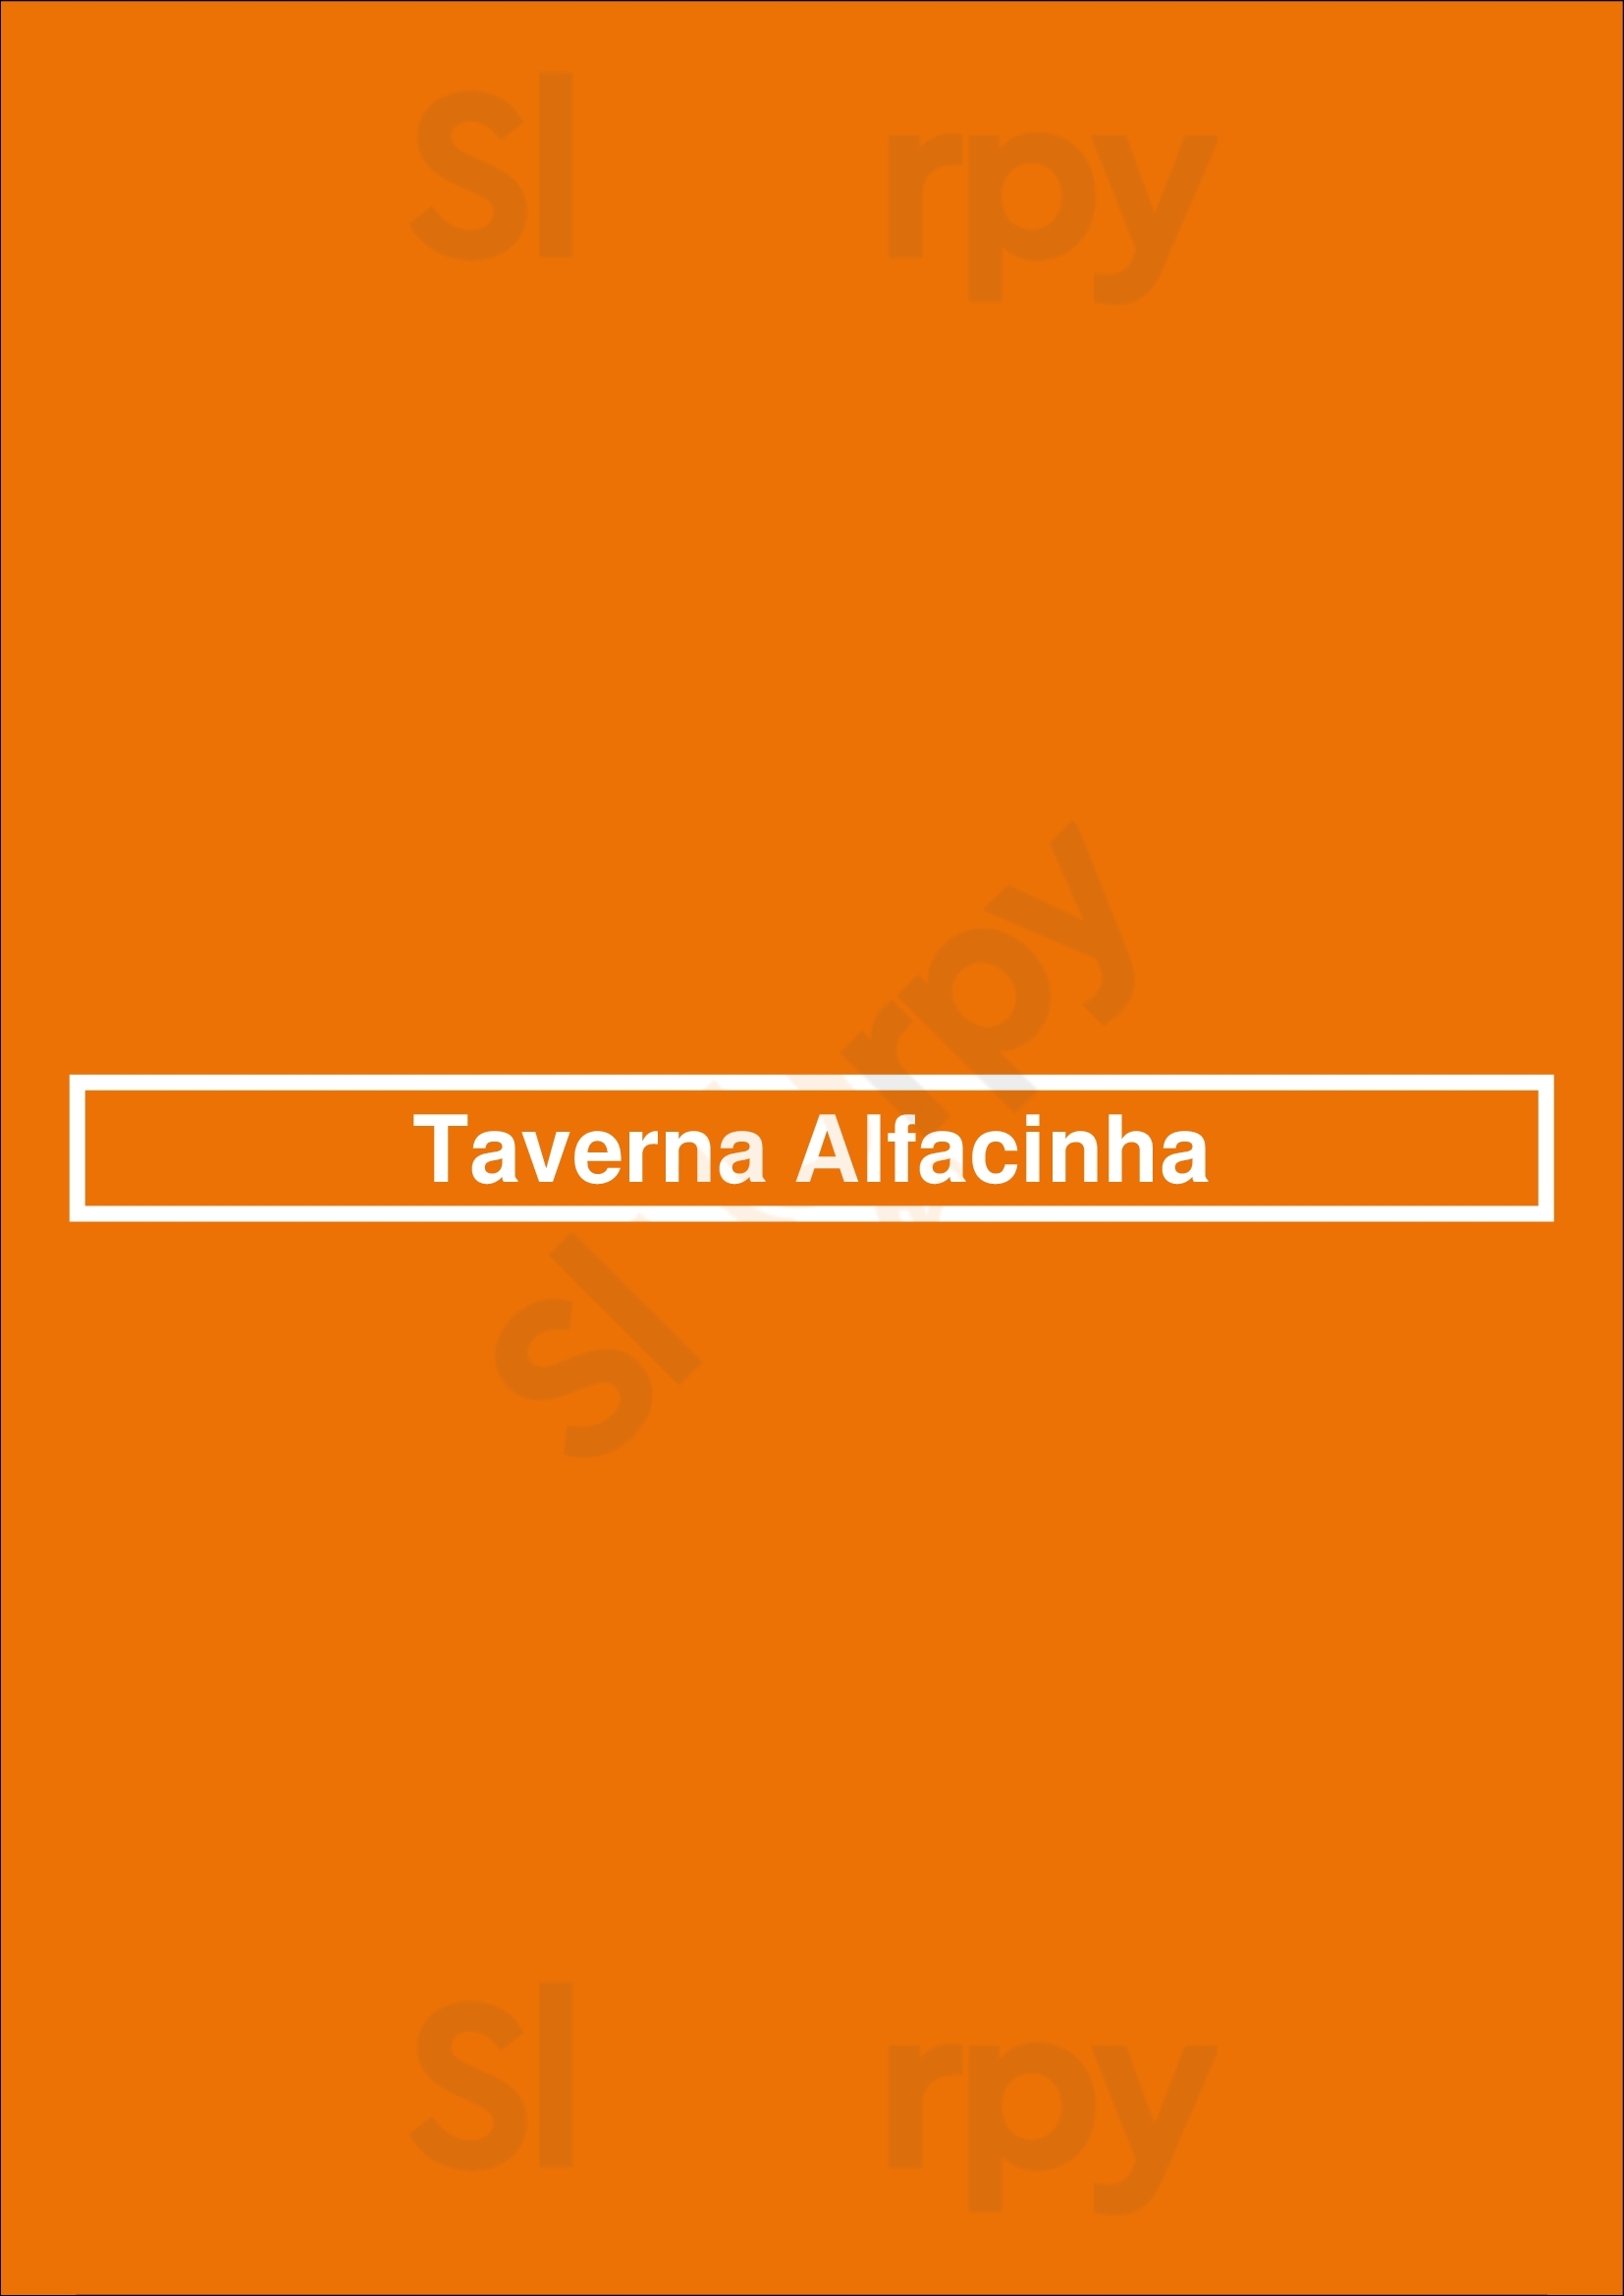 Taverna Alfacinha Lisboa Menu - 1